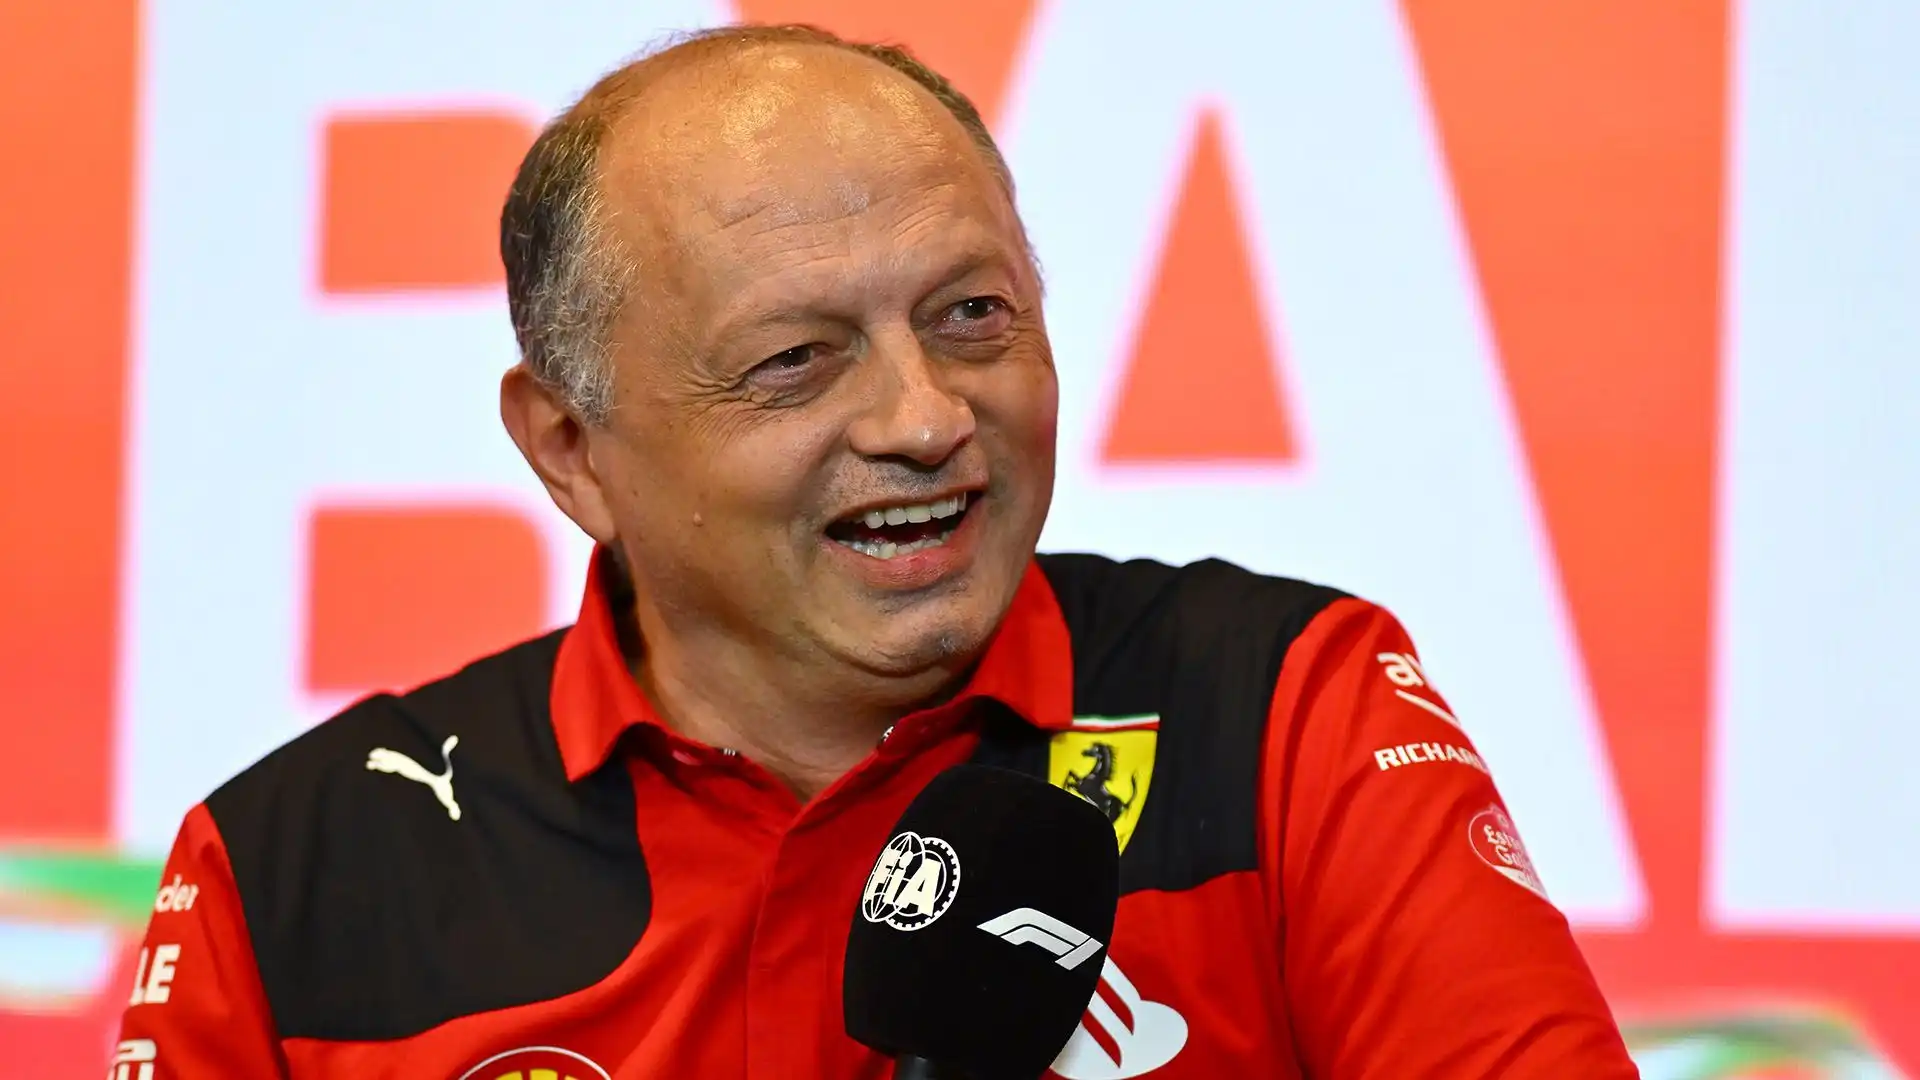 La Ferrari all'inizio del 2023 aveva parlato anche con Hamilton: "Abbiamo parlato un po', ma se firmassi i contratti con tutti quelli che hanno corso per me in passato mi costerebbe una fortuna..."